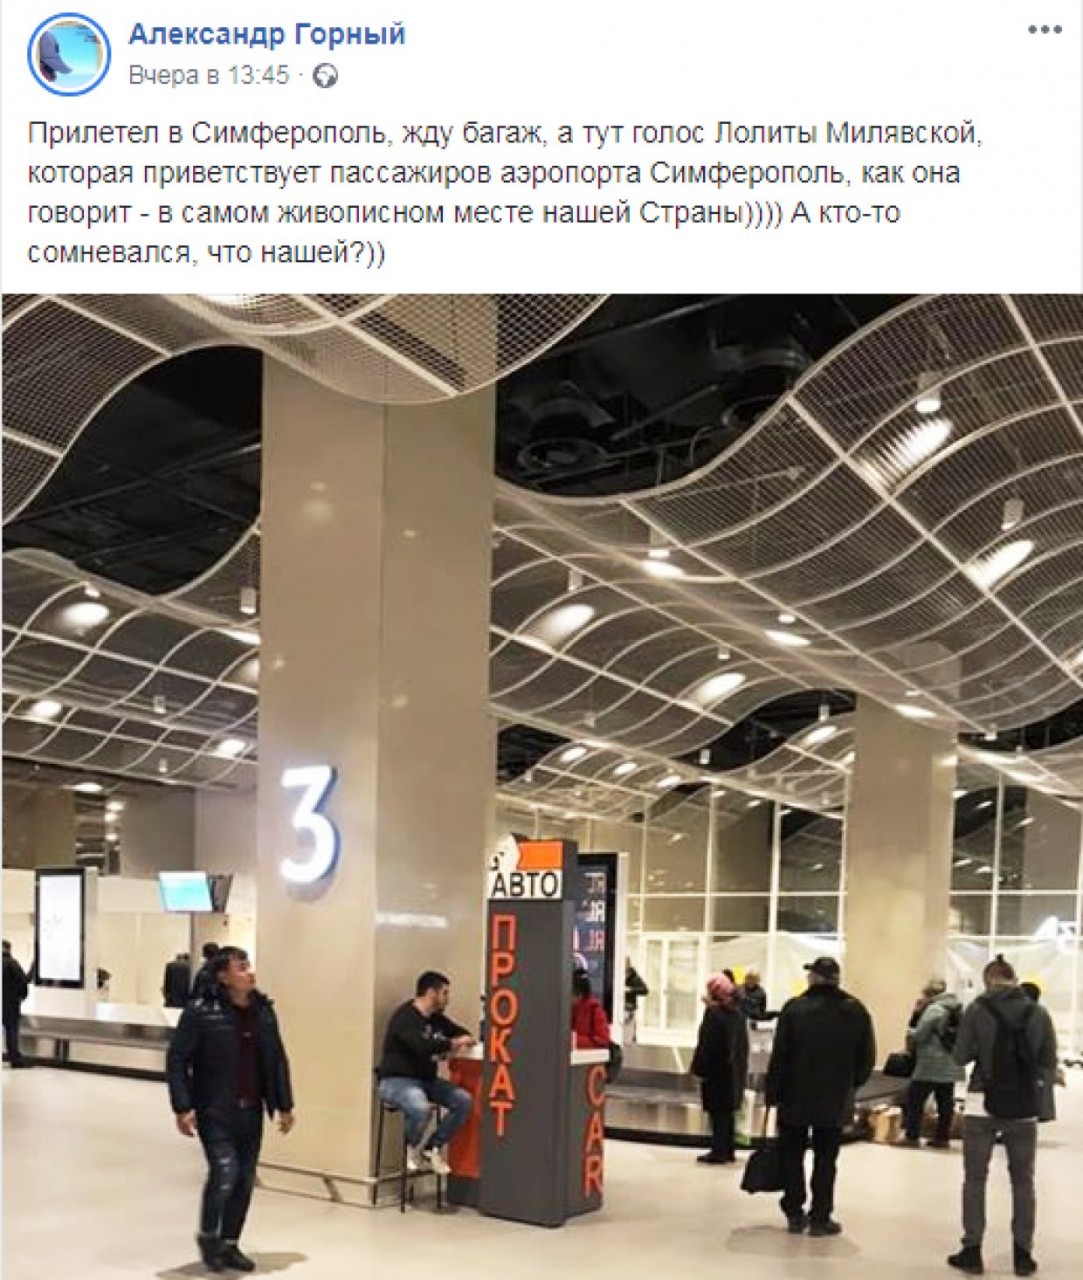 Голос Лолиты Милявской приветствует пассажиров в аэропорту Симферополя, сообщил в своем Facebook блогер Александр Горный